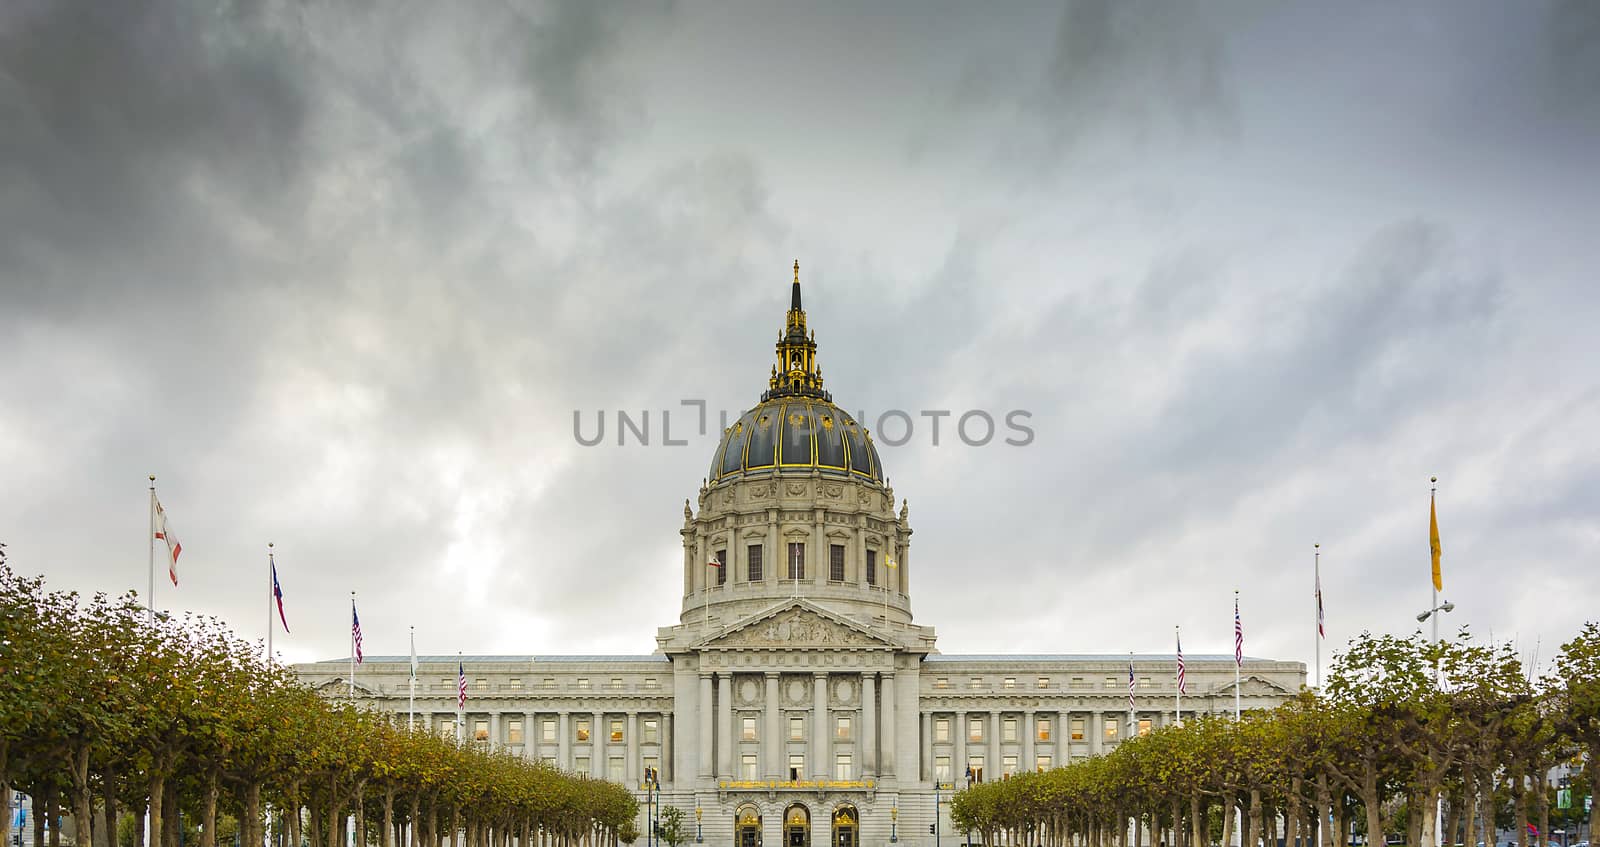 San Francisco City Hall by rarrarorro